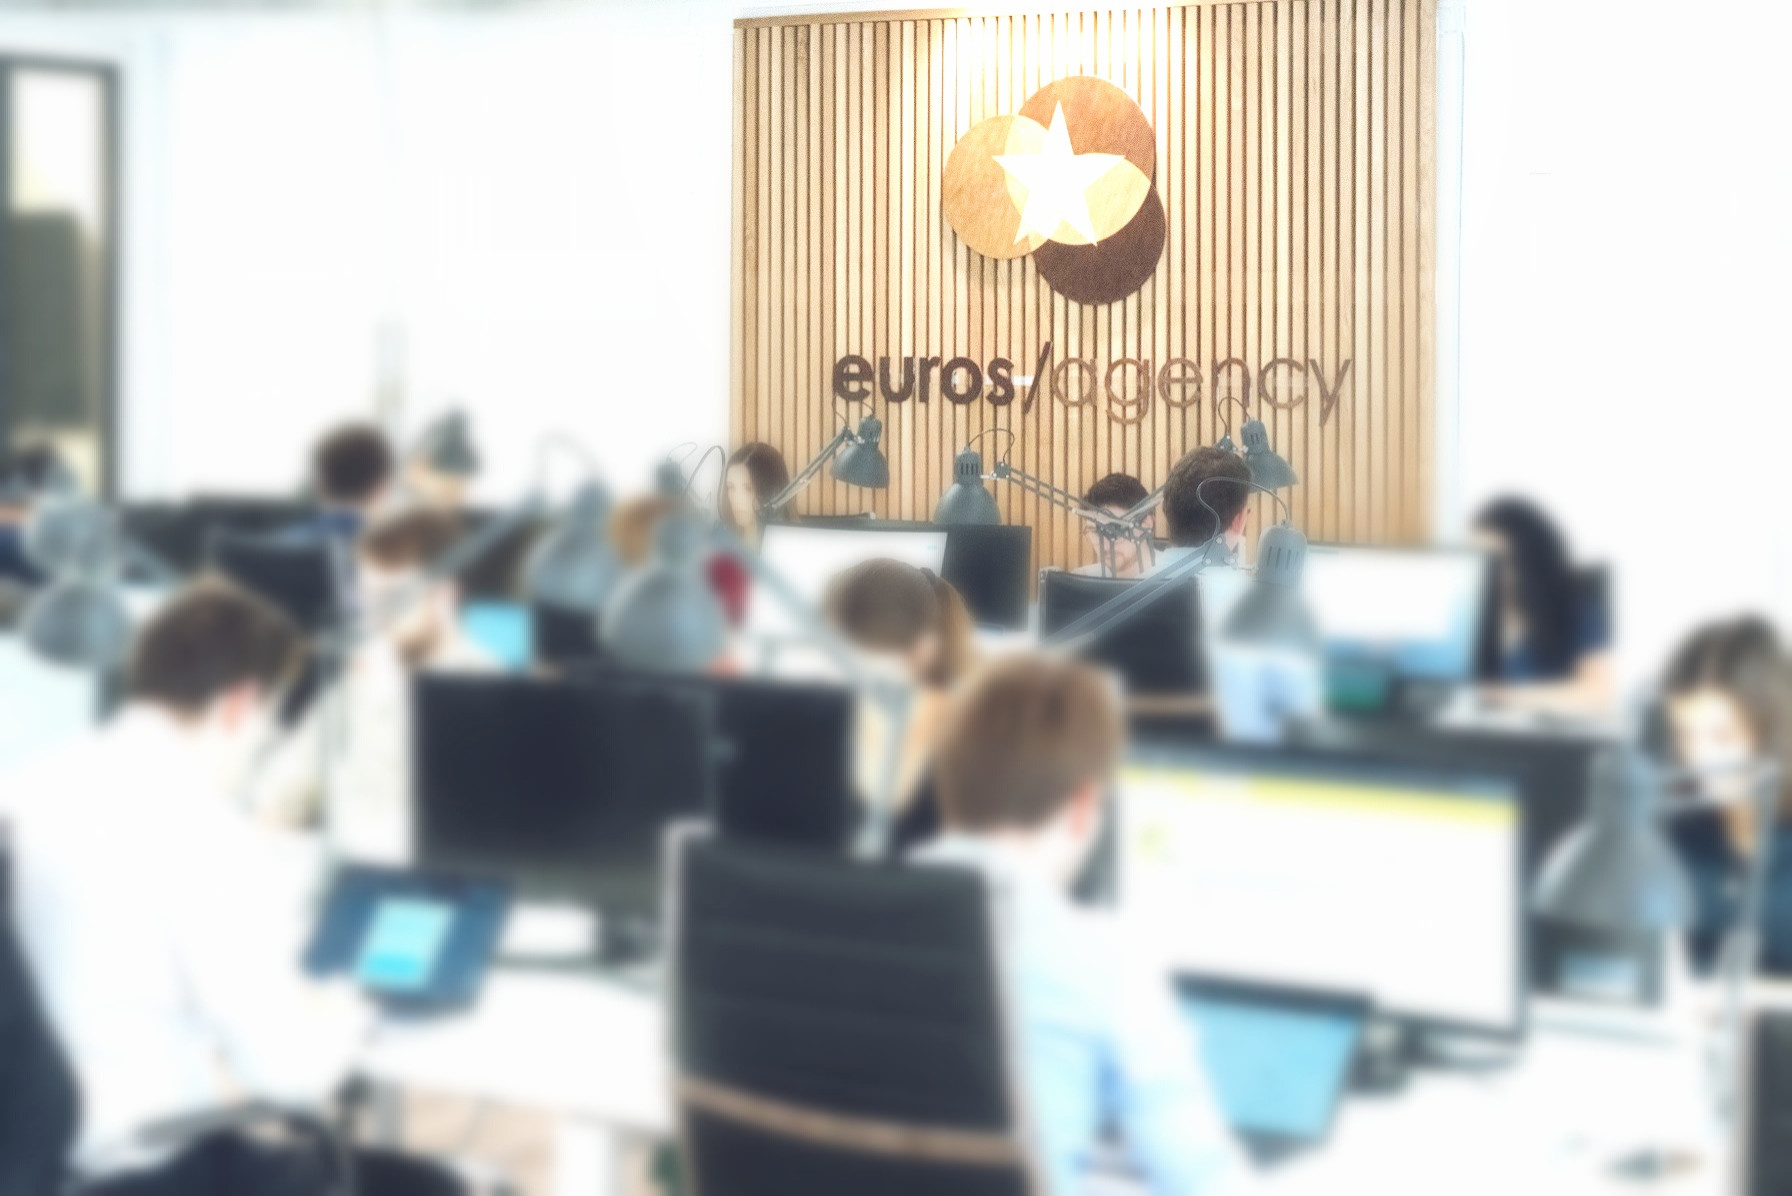 Décoration Bureaux Euro/ Agency